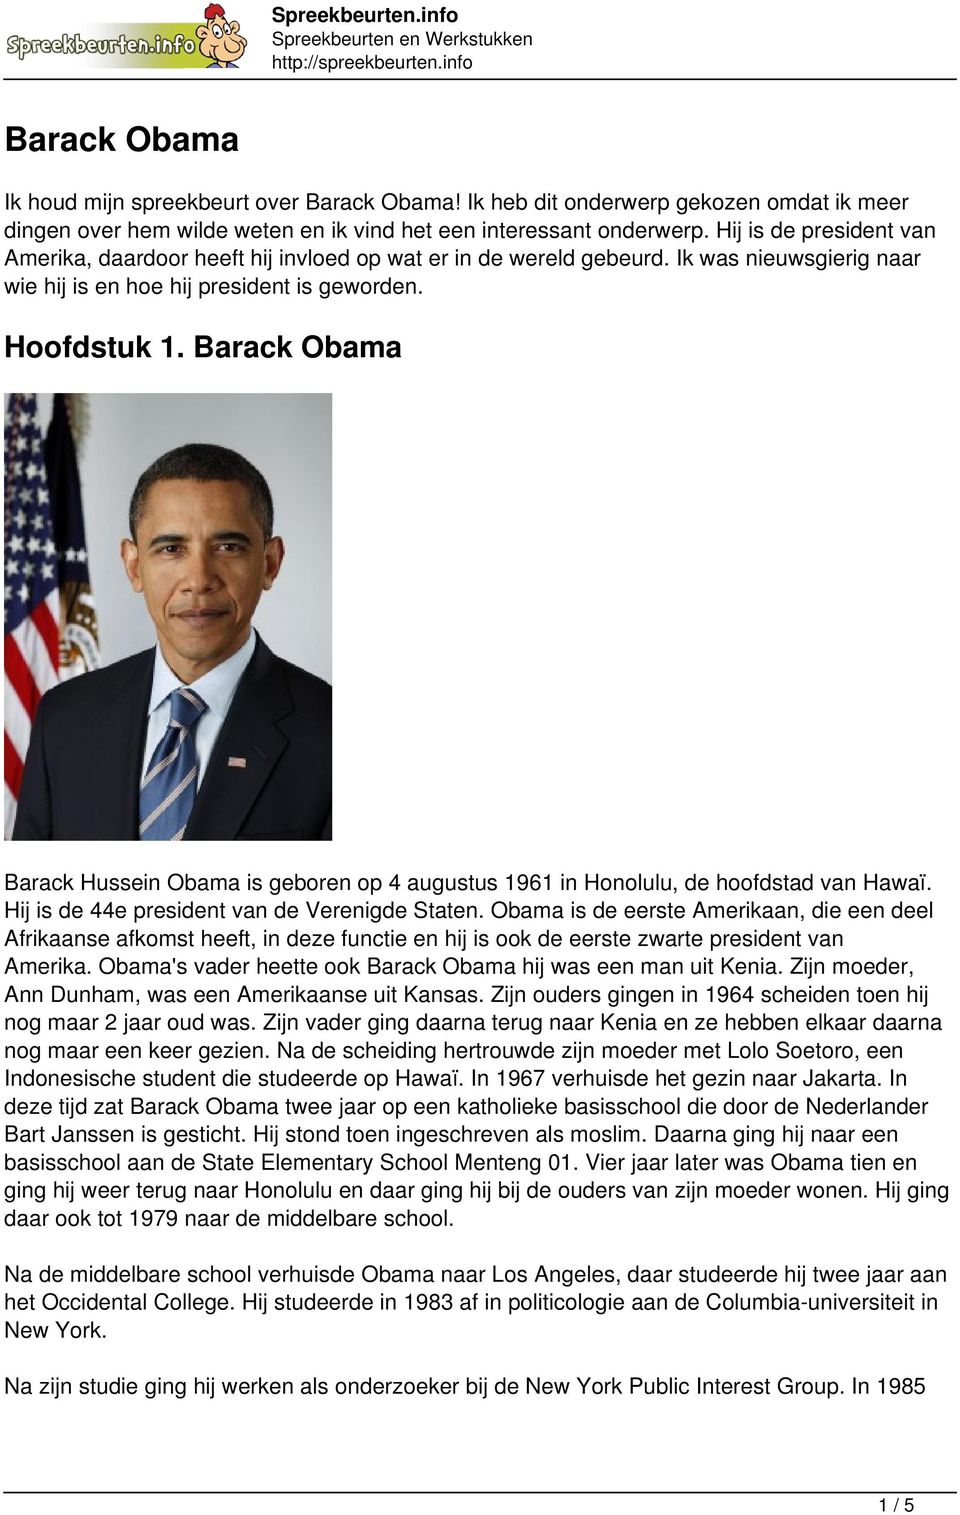 Barack Obama Barack Hussein Obama is geboren op 4 augustus 1961 in Honolulu, de hoofdstad van Hawaï. Hij is de 44e president van de Verenigde Staten.